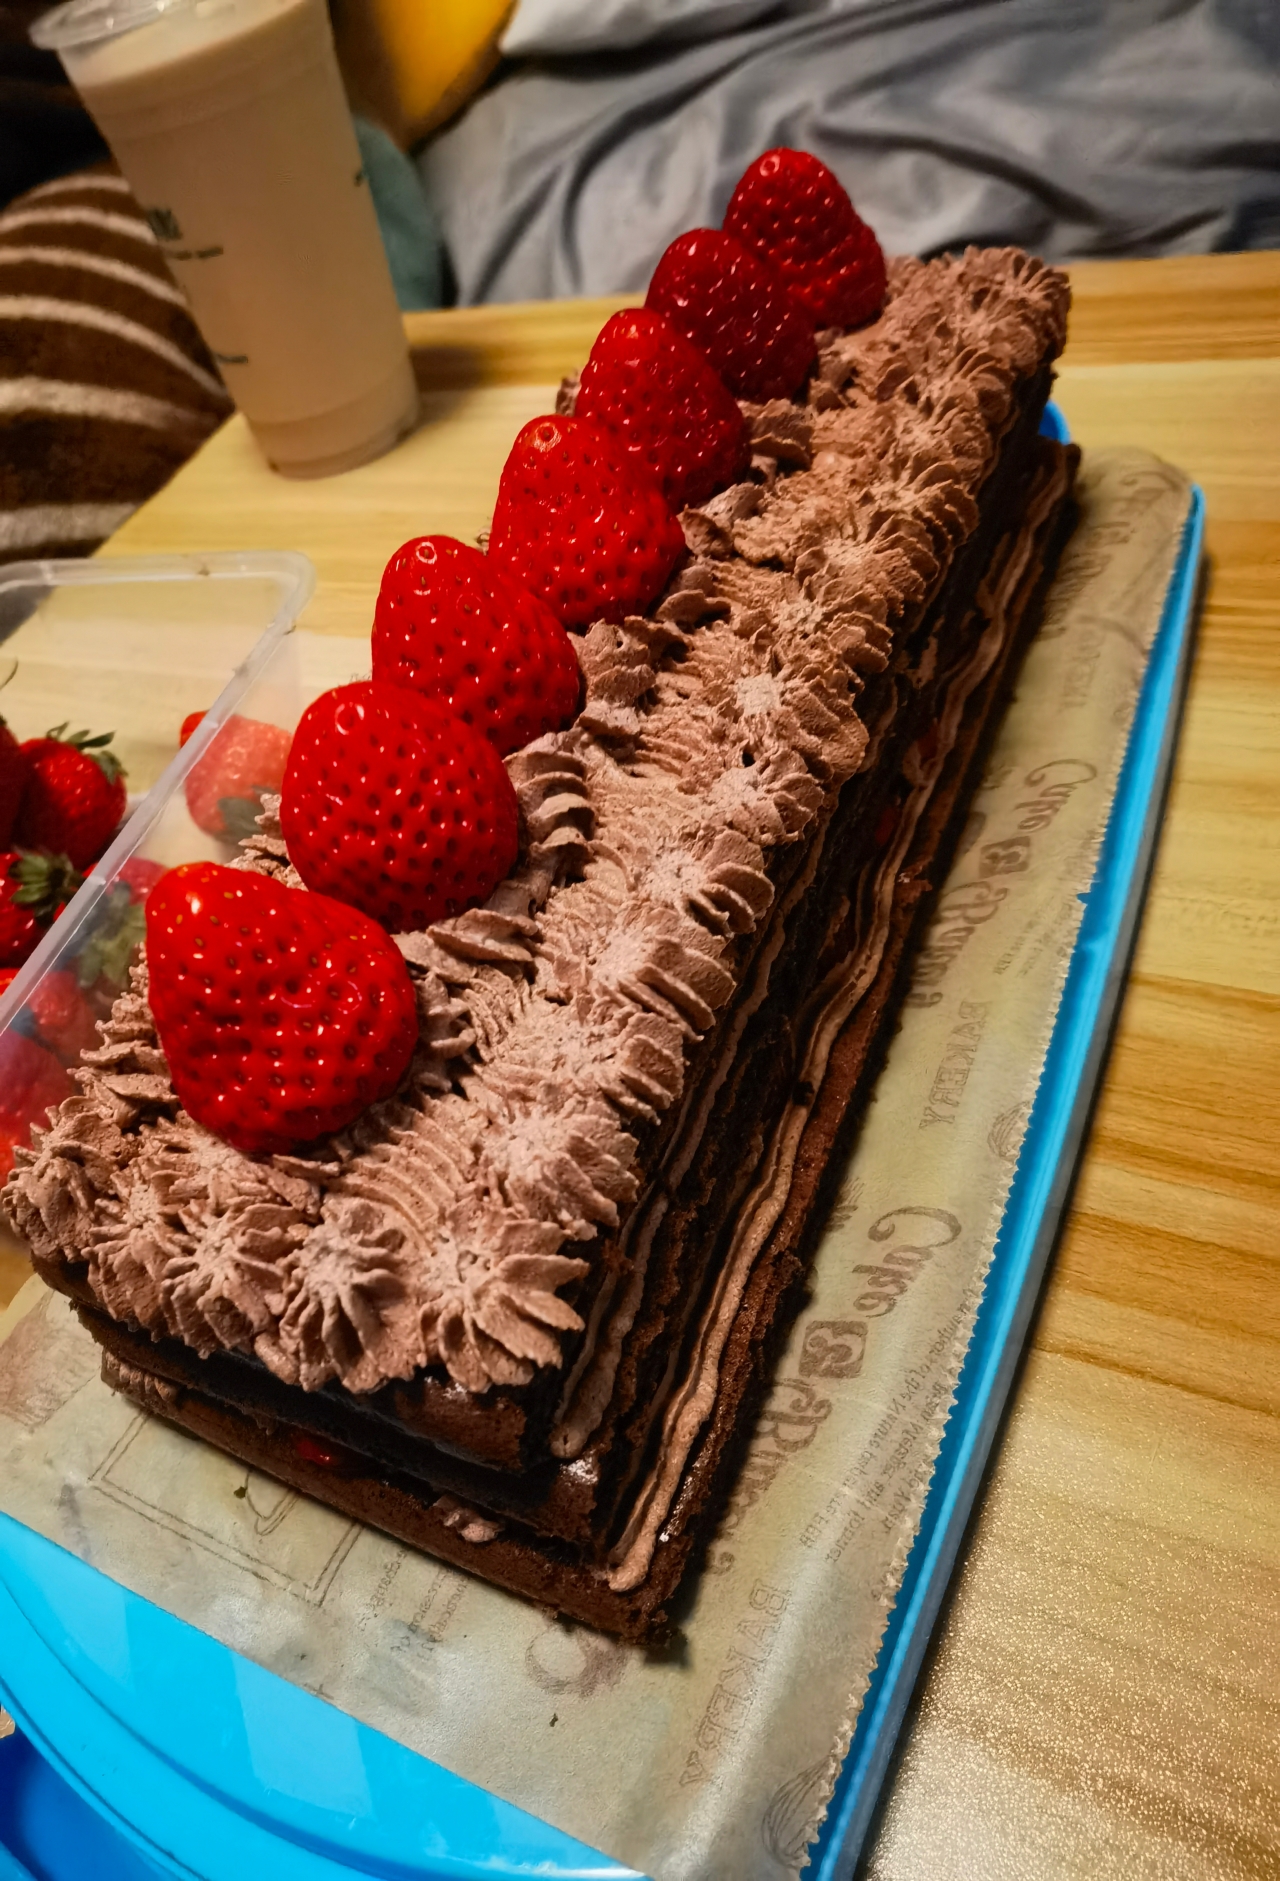 巧克力草莓城堡蛋糕『零失败超好吃高颜值』